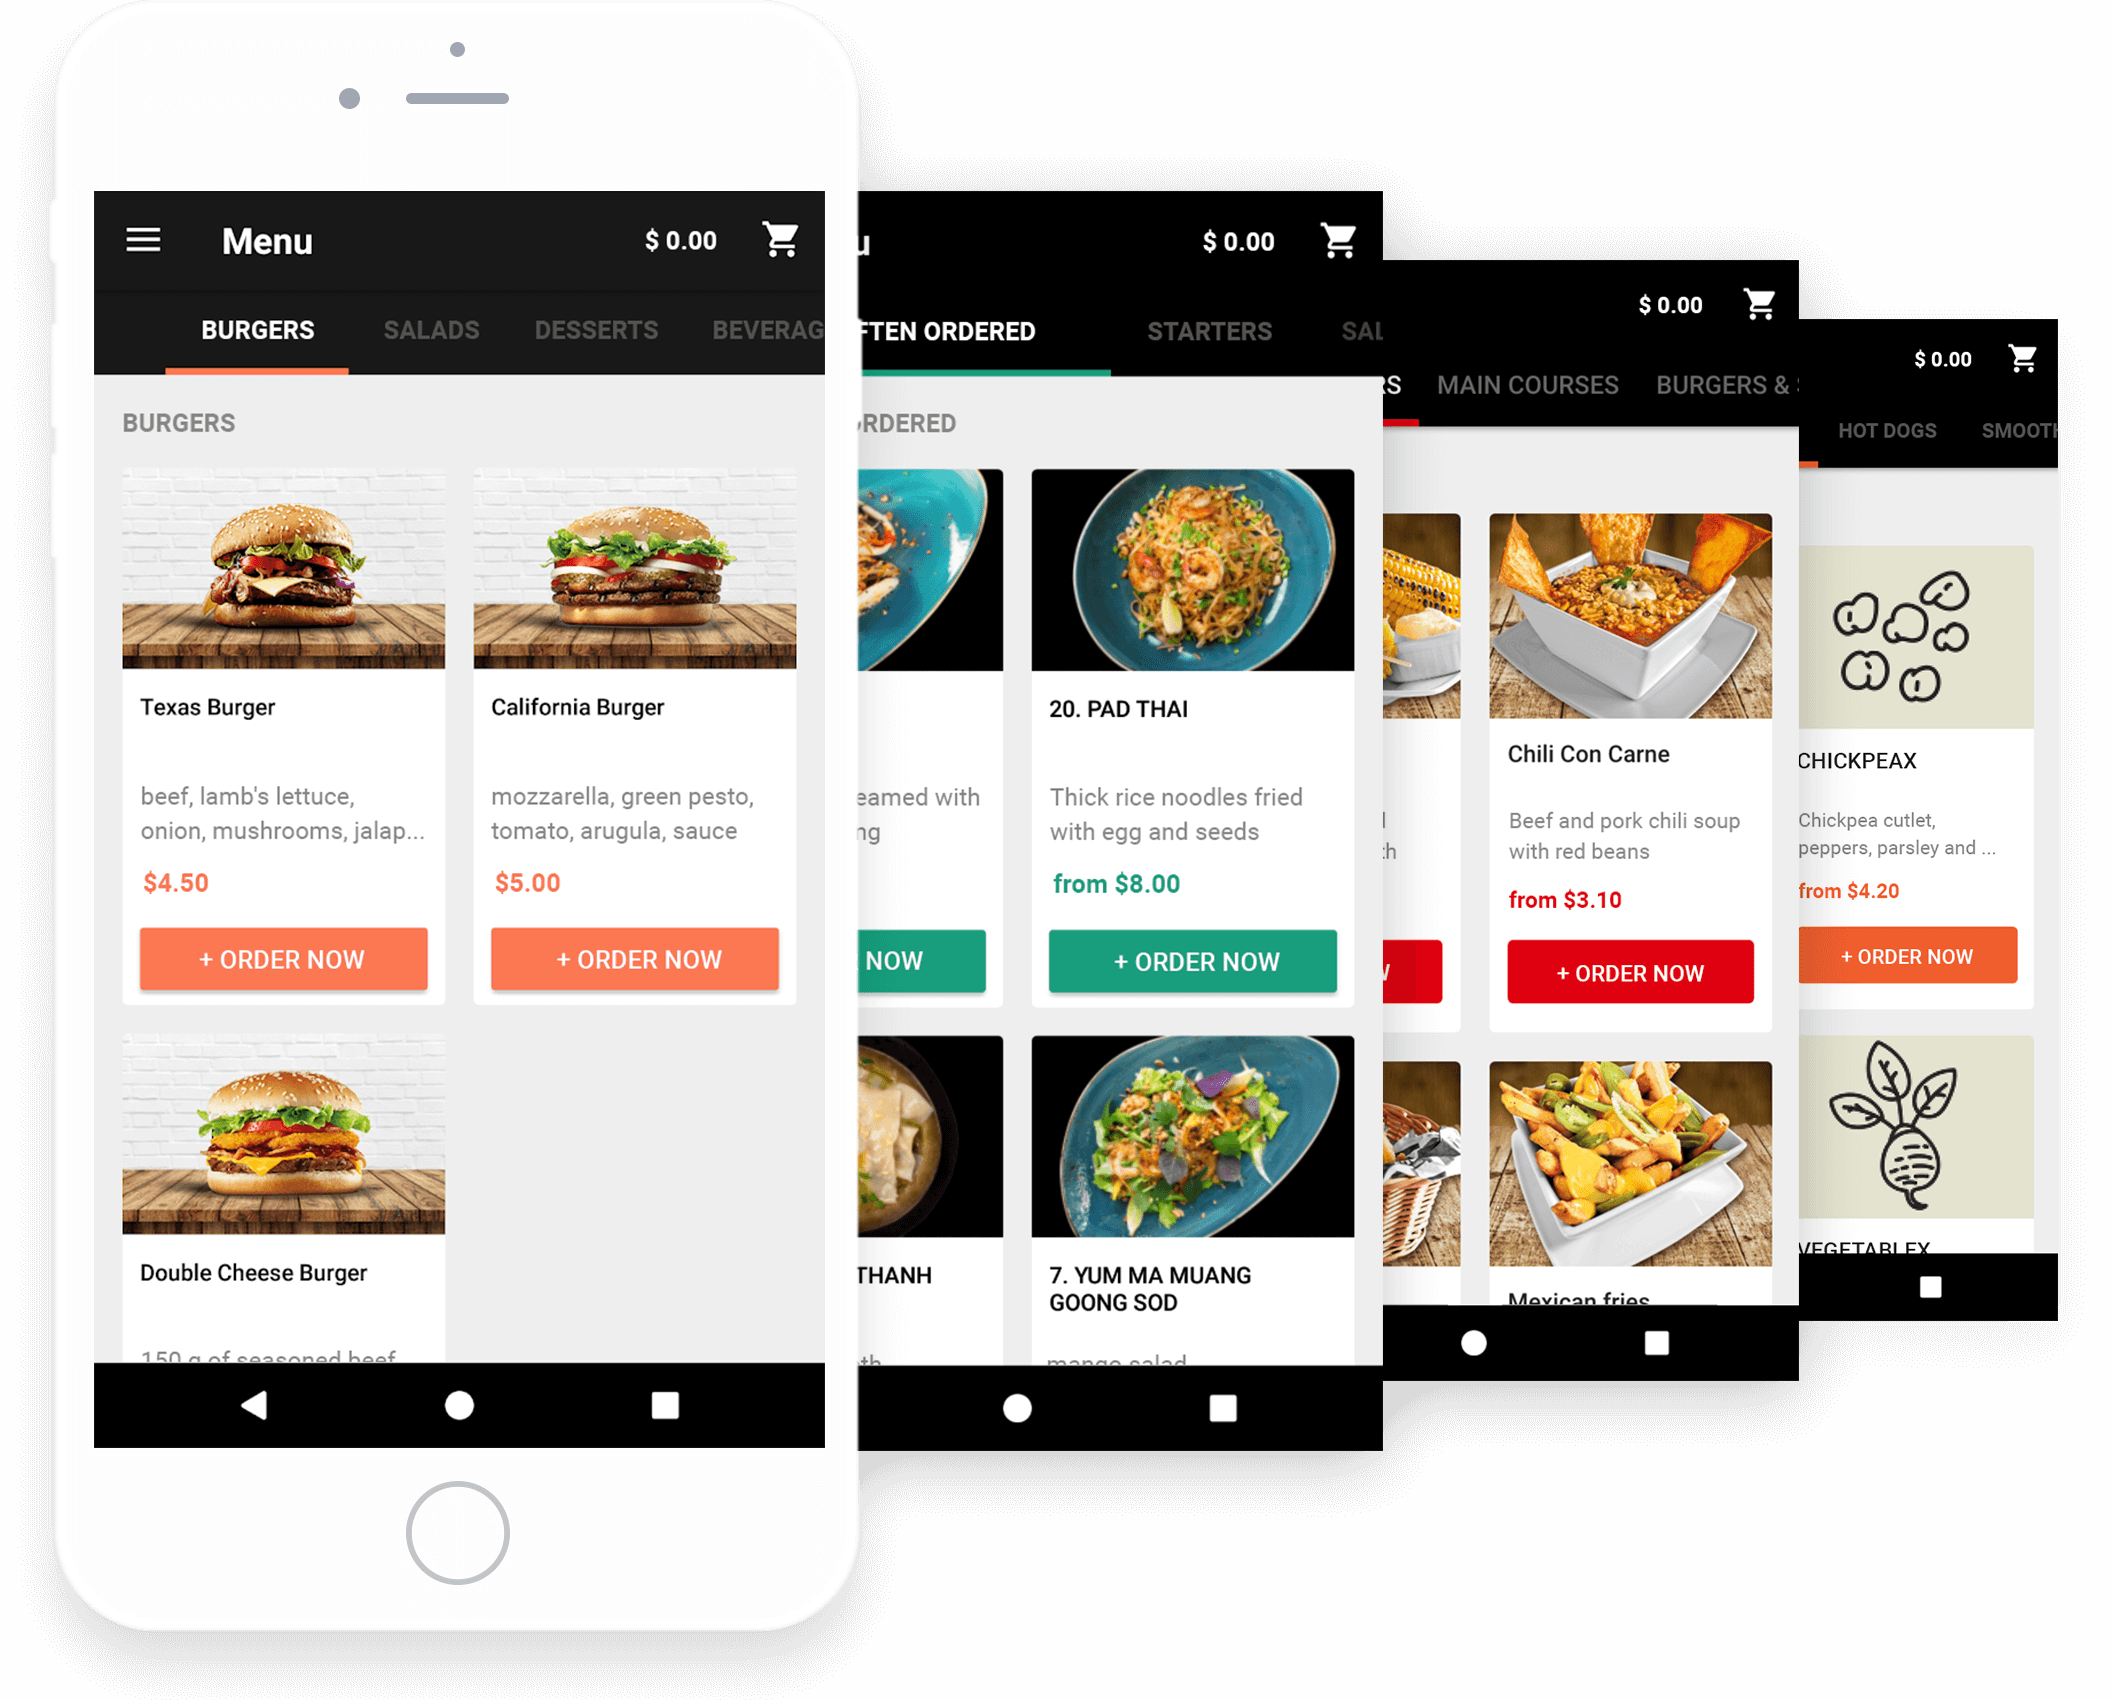 Carousel of restaurant mobile apps.